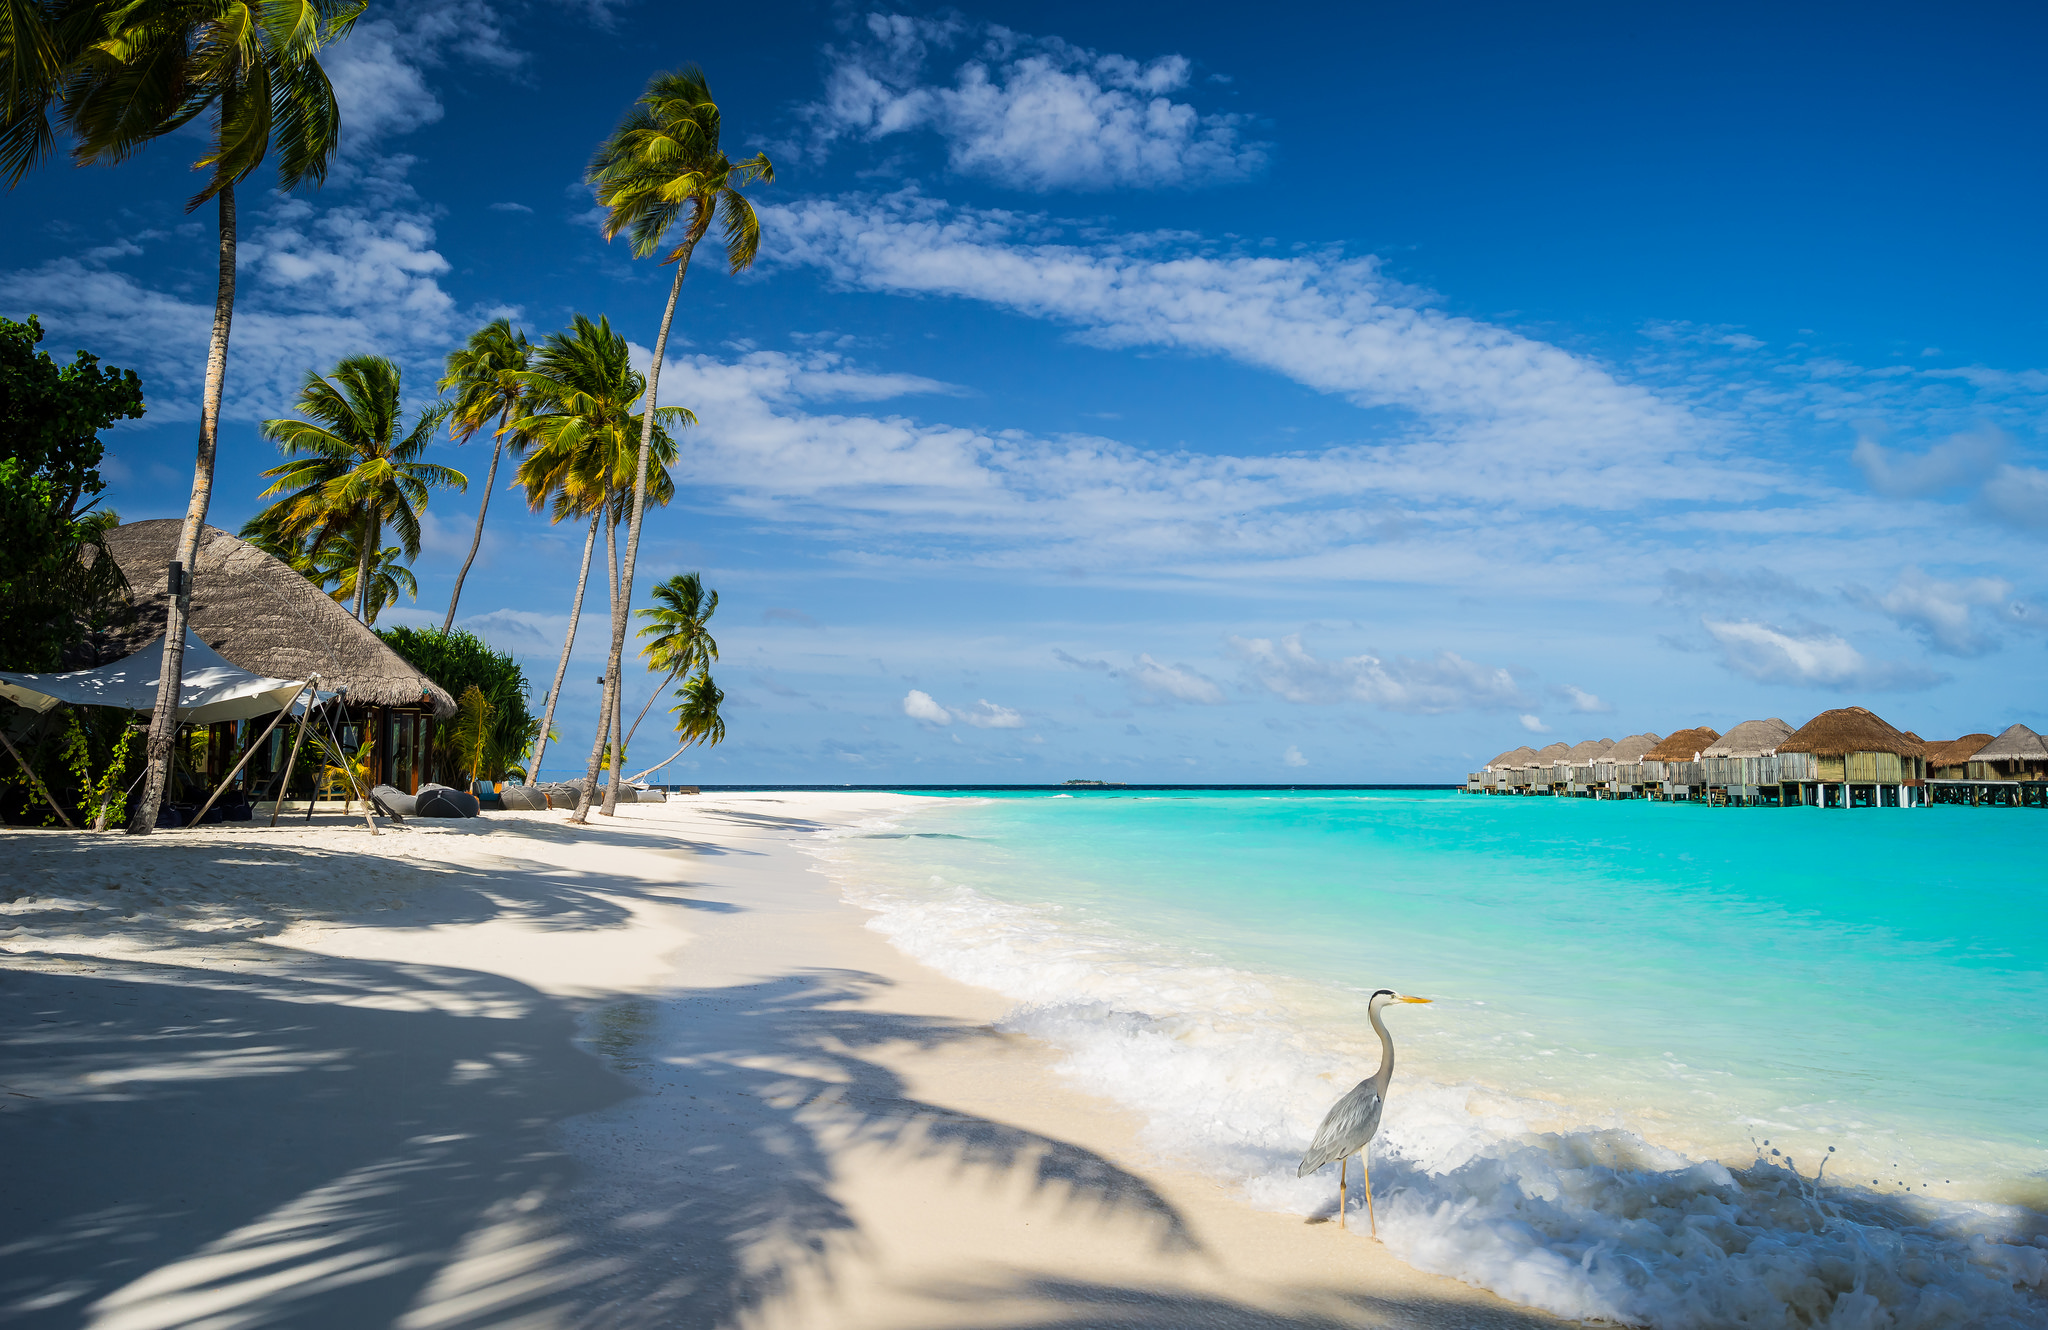 De Maldiven staan bekend om hun strakke witte stranden en tophotels. Foto: Mac Qin/Flickr